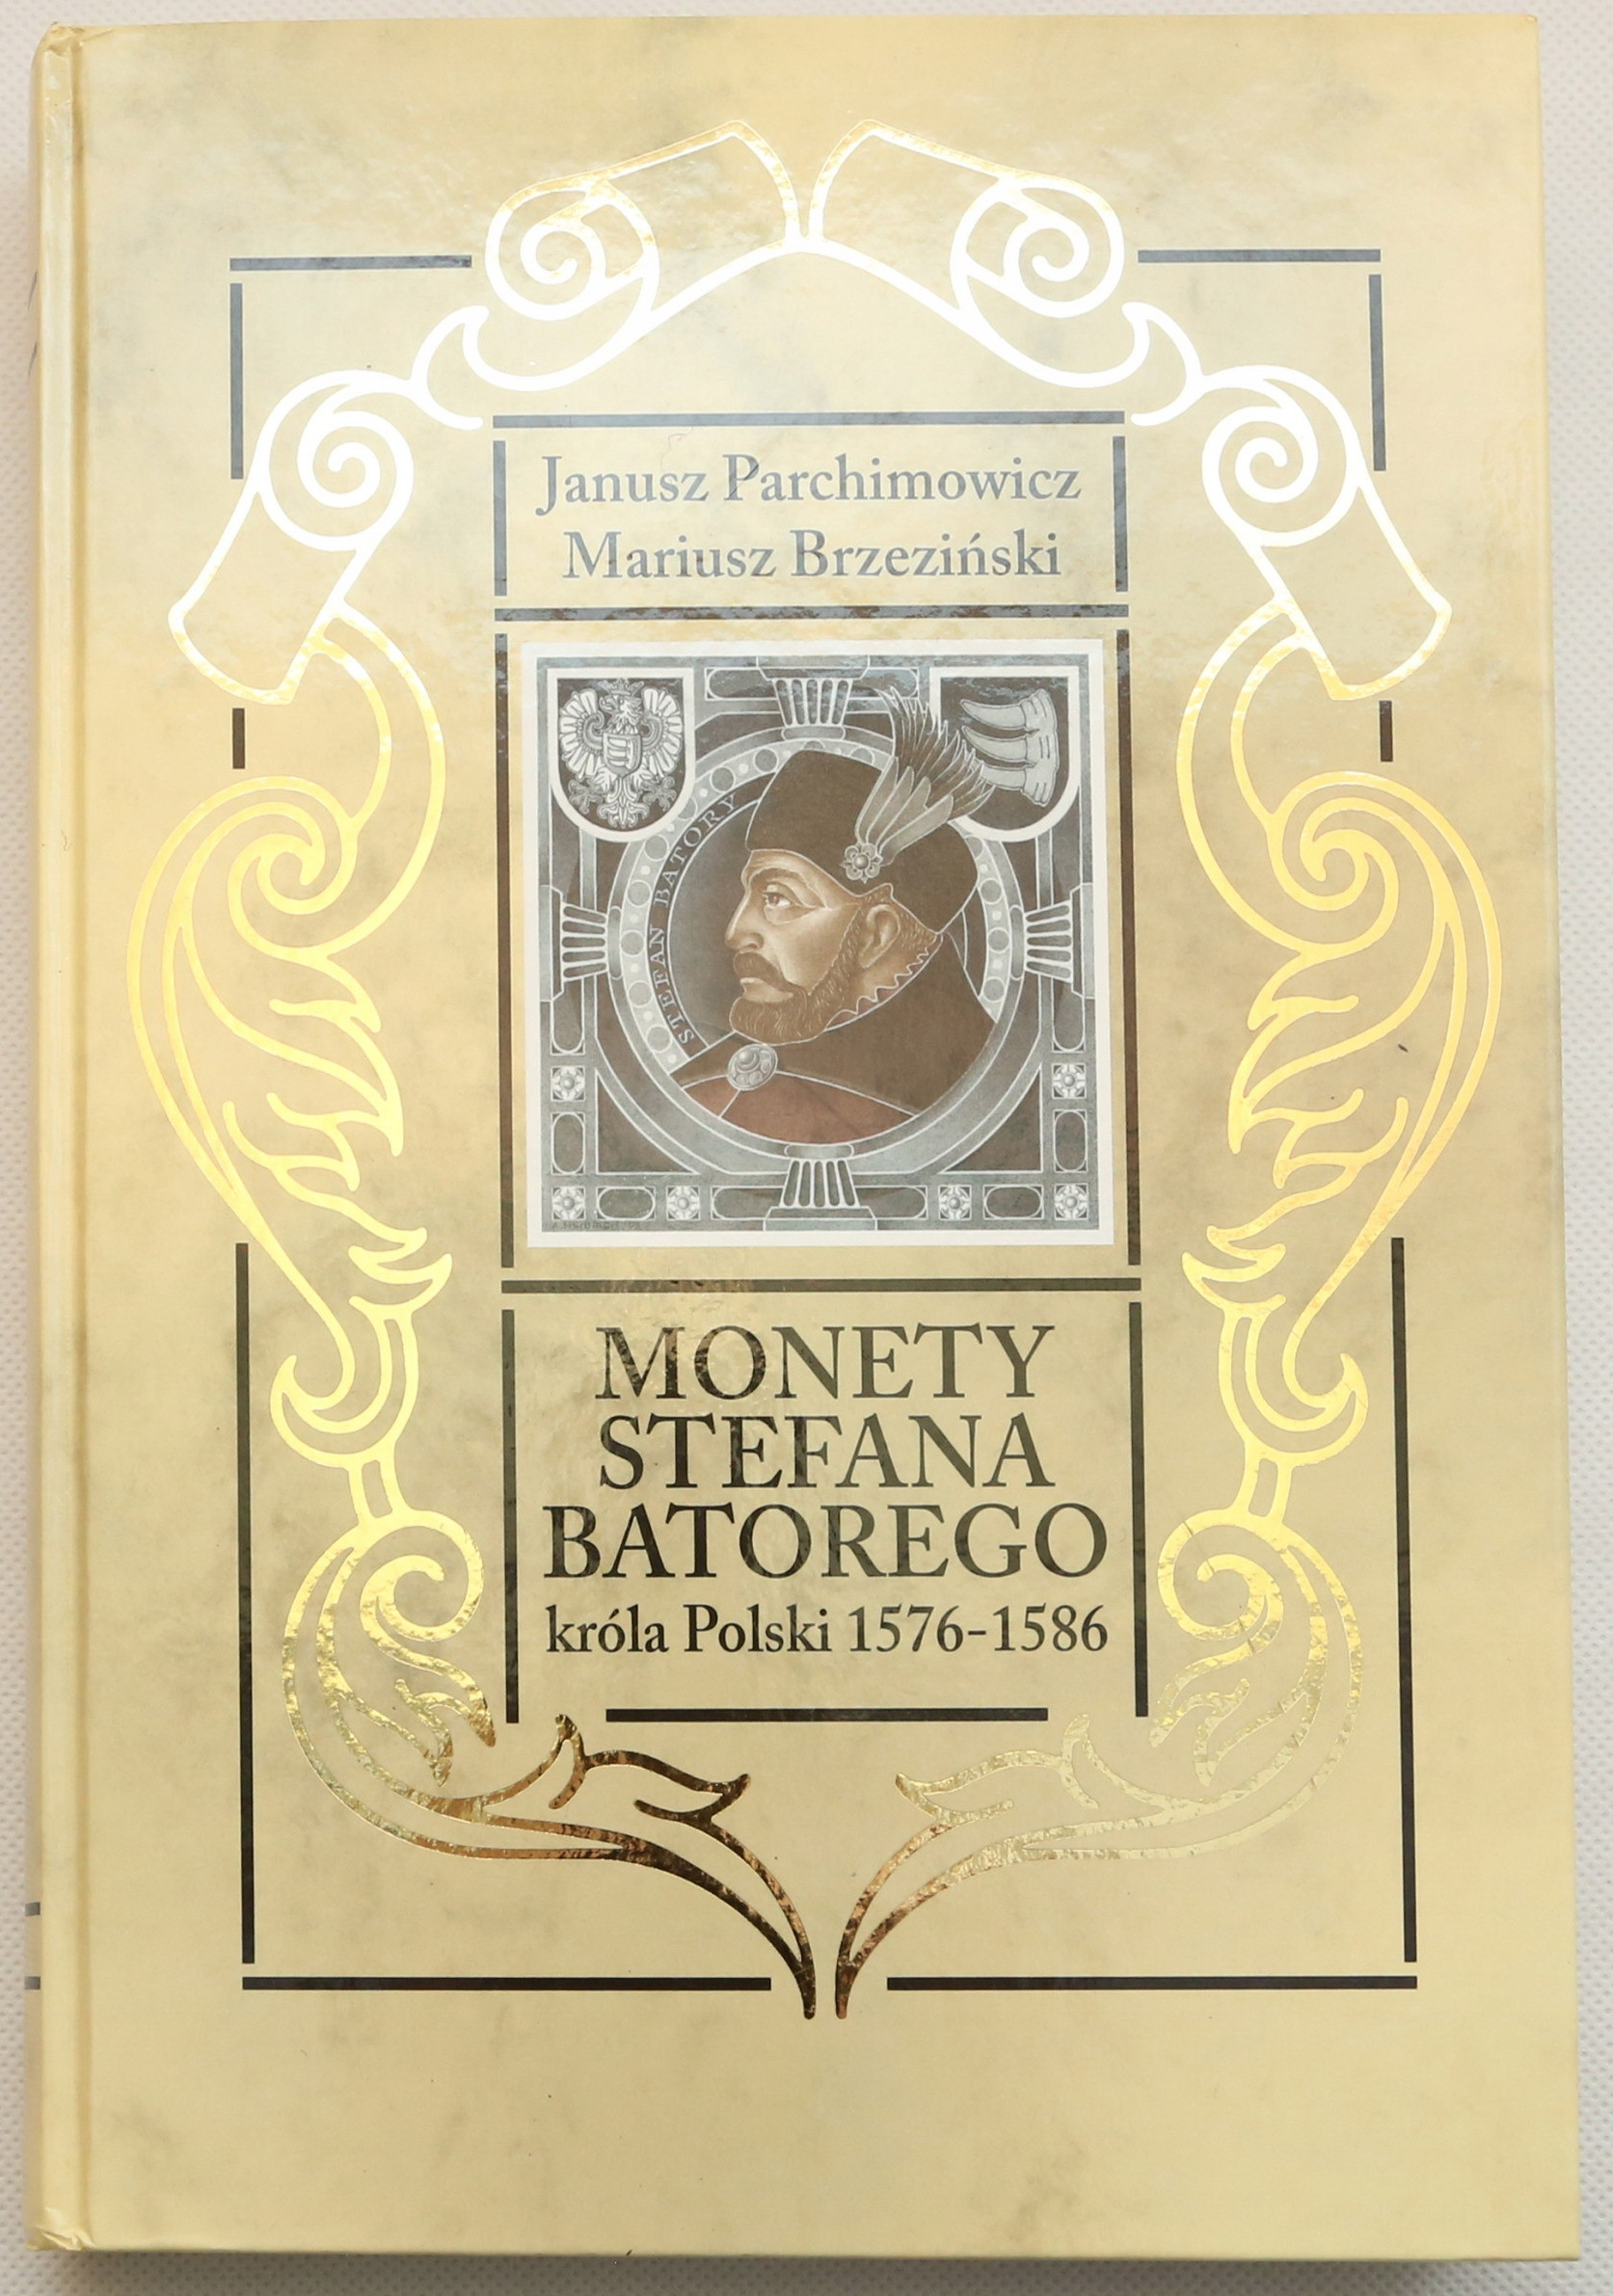 Janusz Parchimowicz i Mariusz Brzeziński - Katalog Monety Stefana Batorego